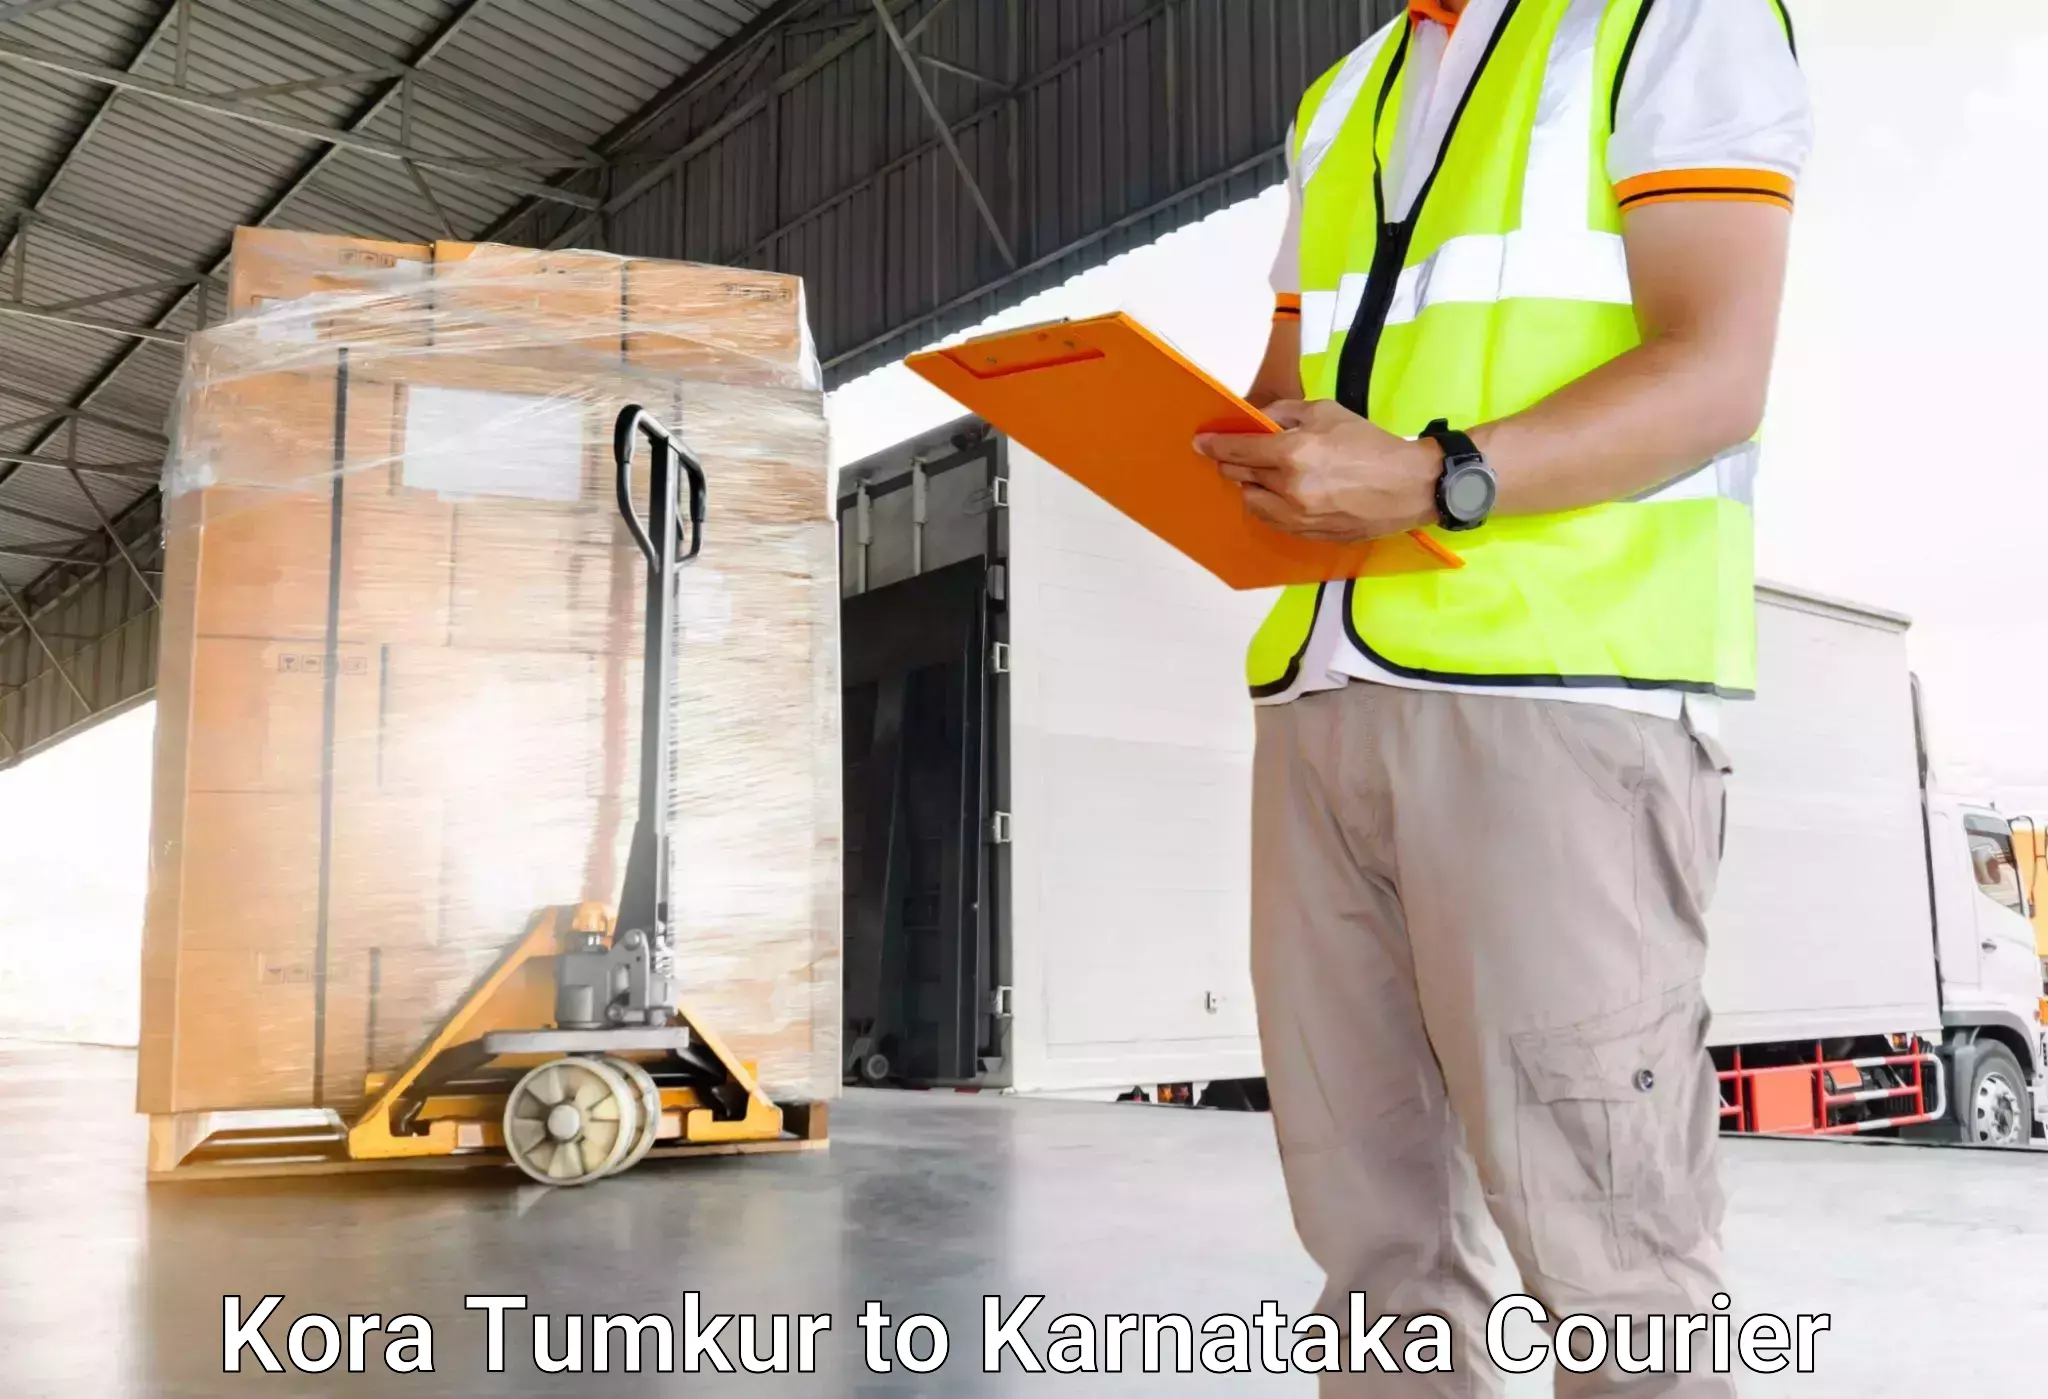 Door-to-door baggage service Kora Tumkur to Piriyapatna